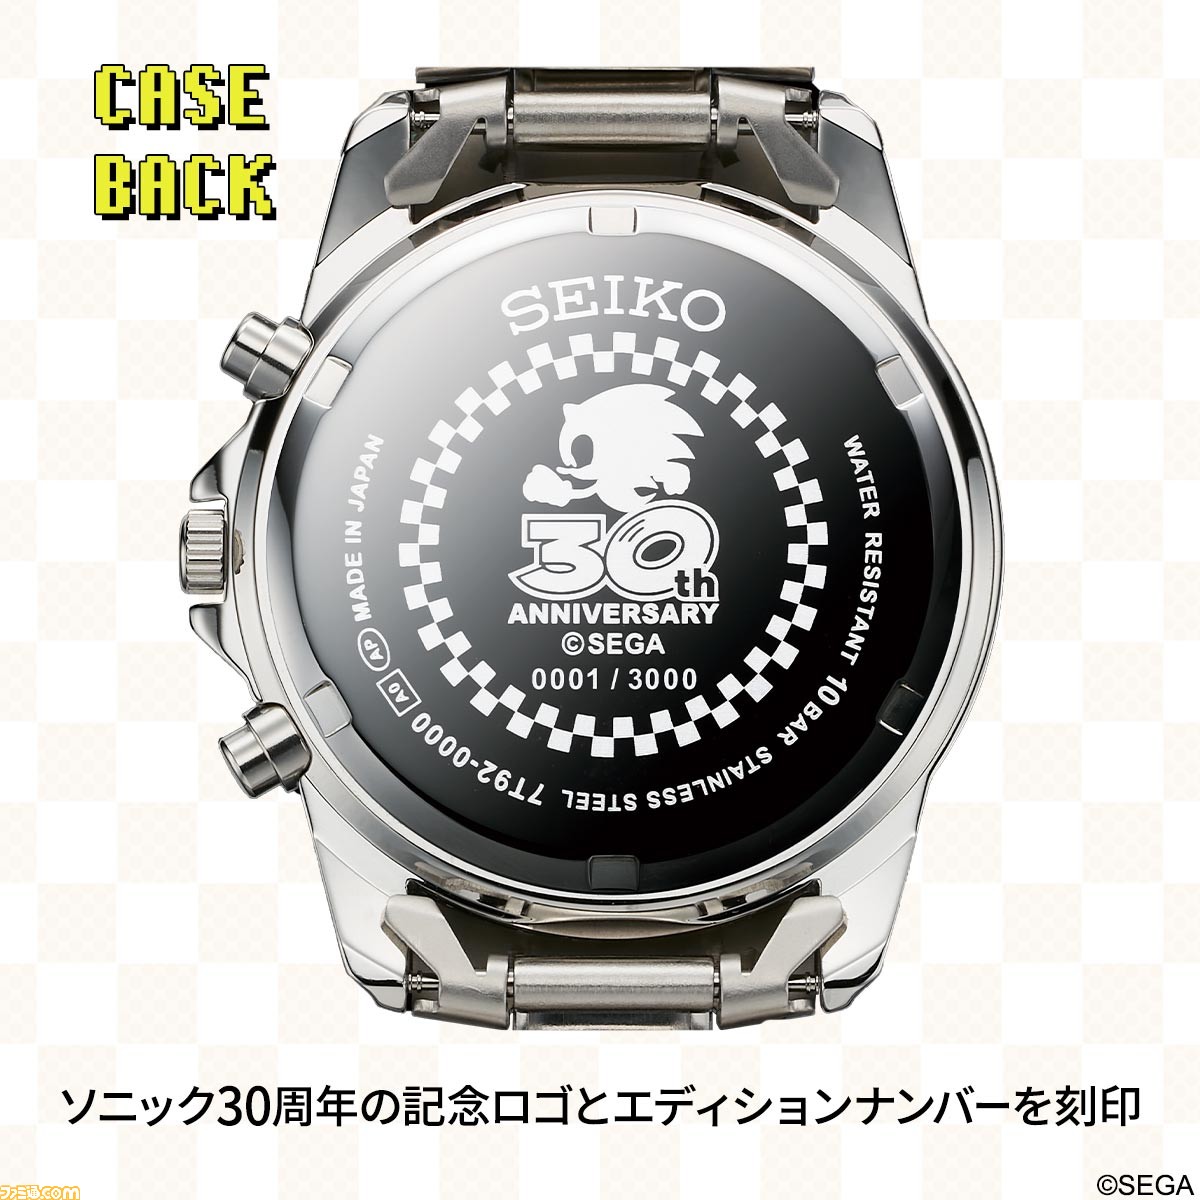 纪念刺猬索尼克30周年 帝国企业有限公司发售限量手表